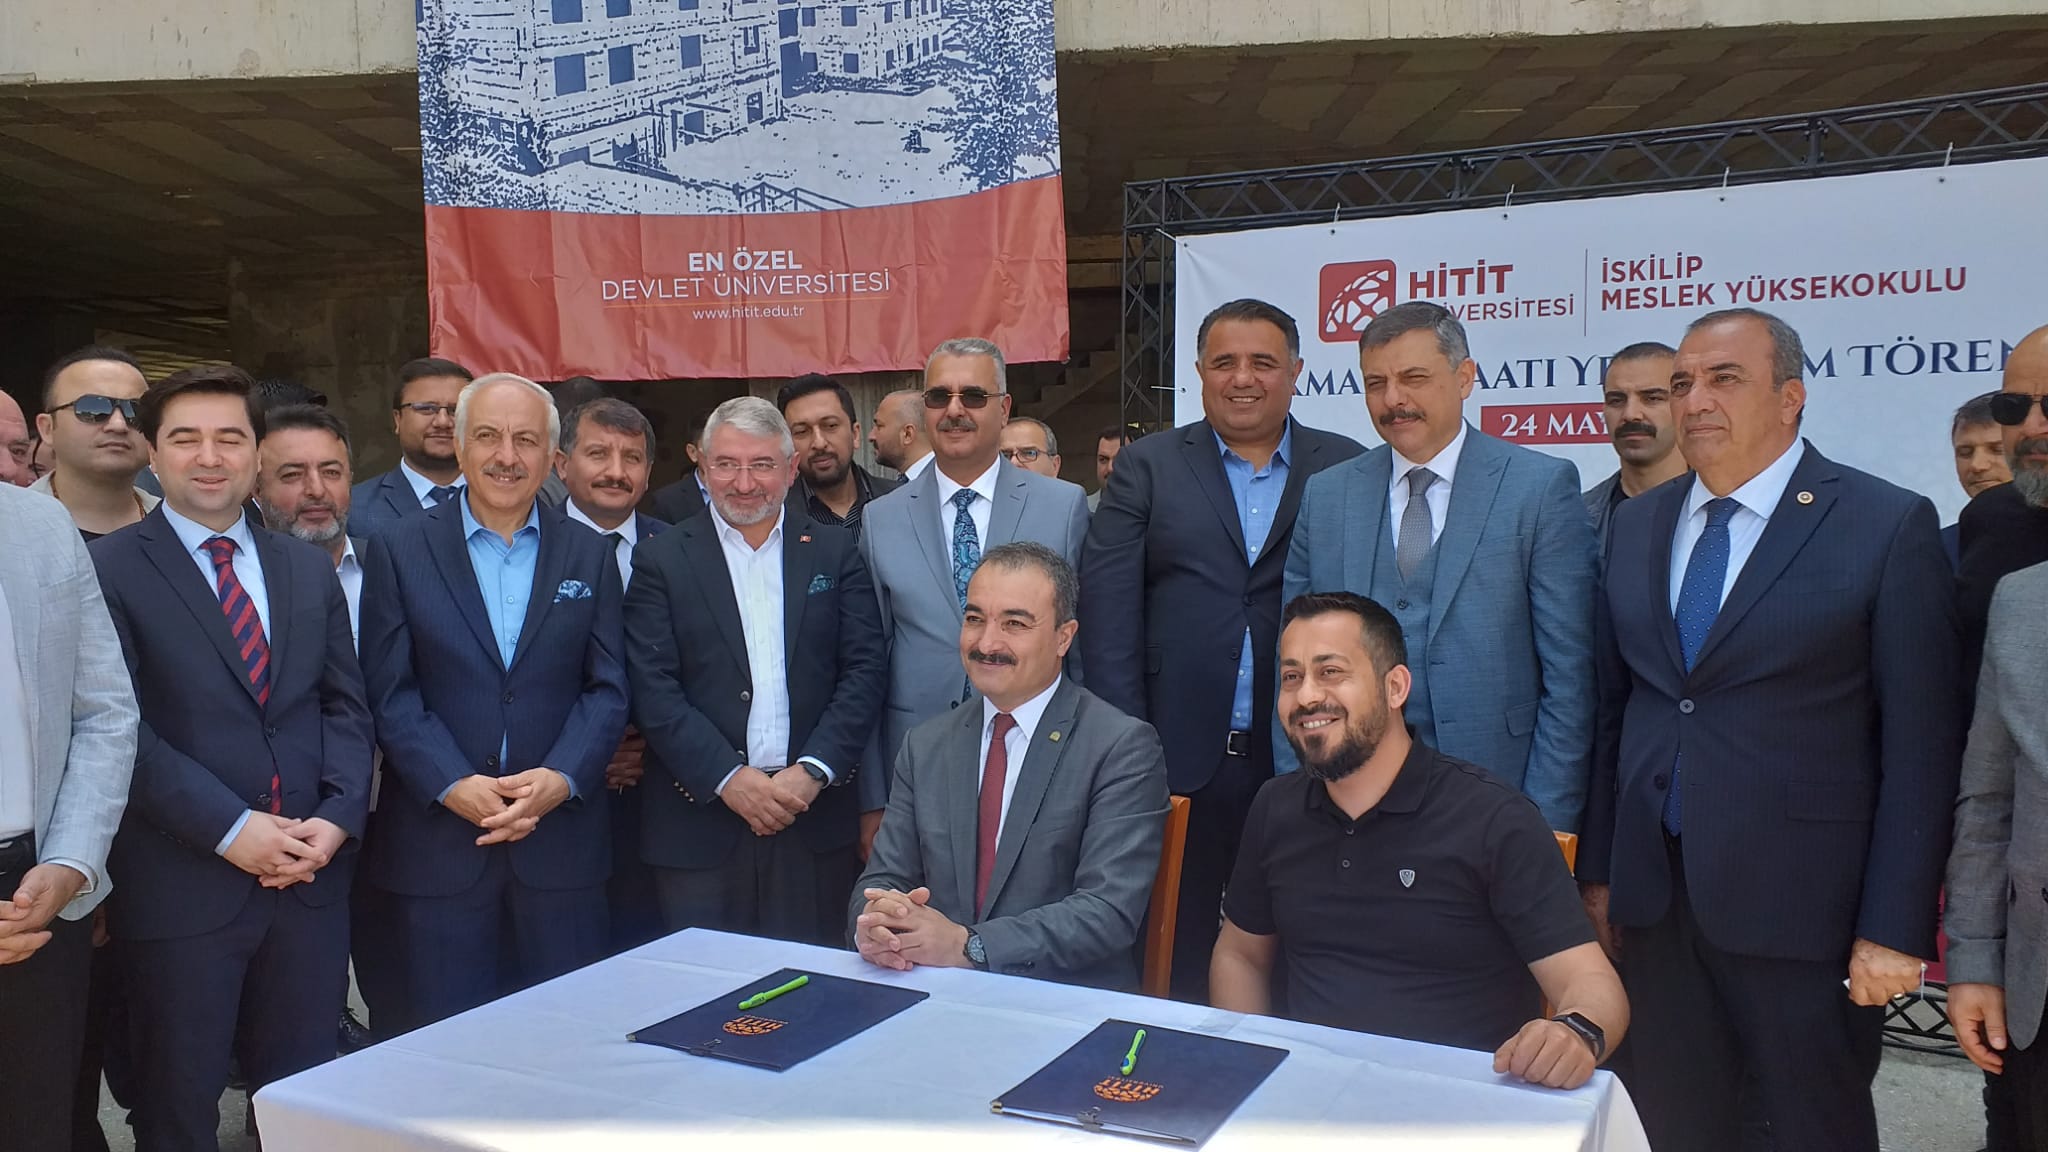 Hitit Üniversitesi İskilip Meslek Yüksekokulu inşaatı için protokol imzalandı